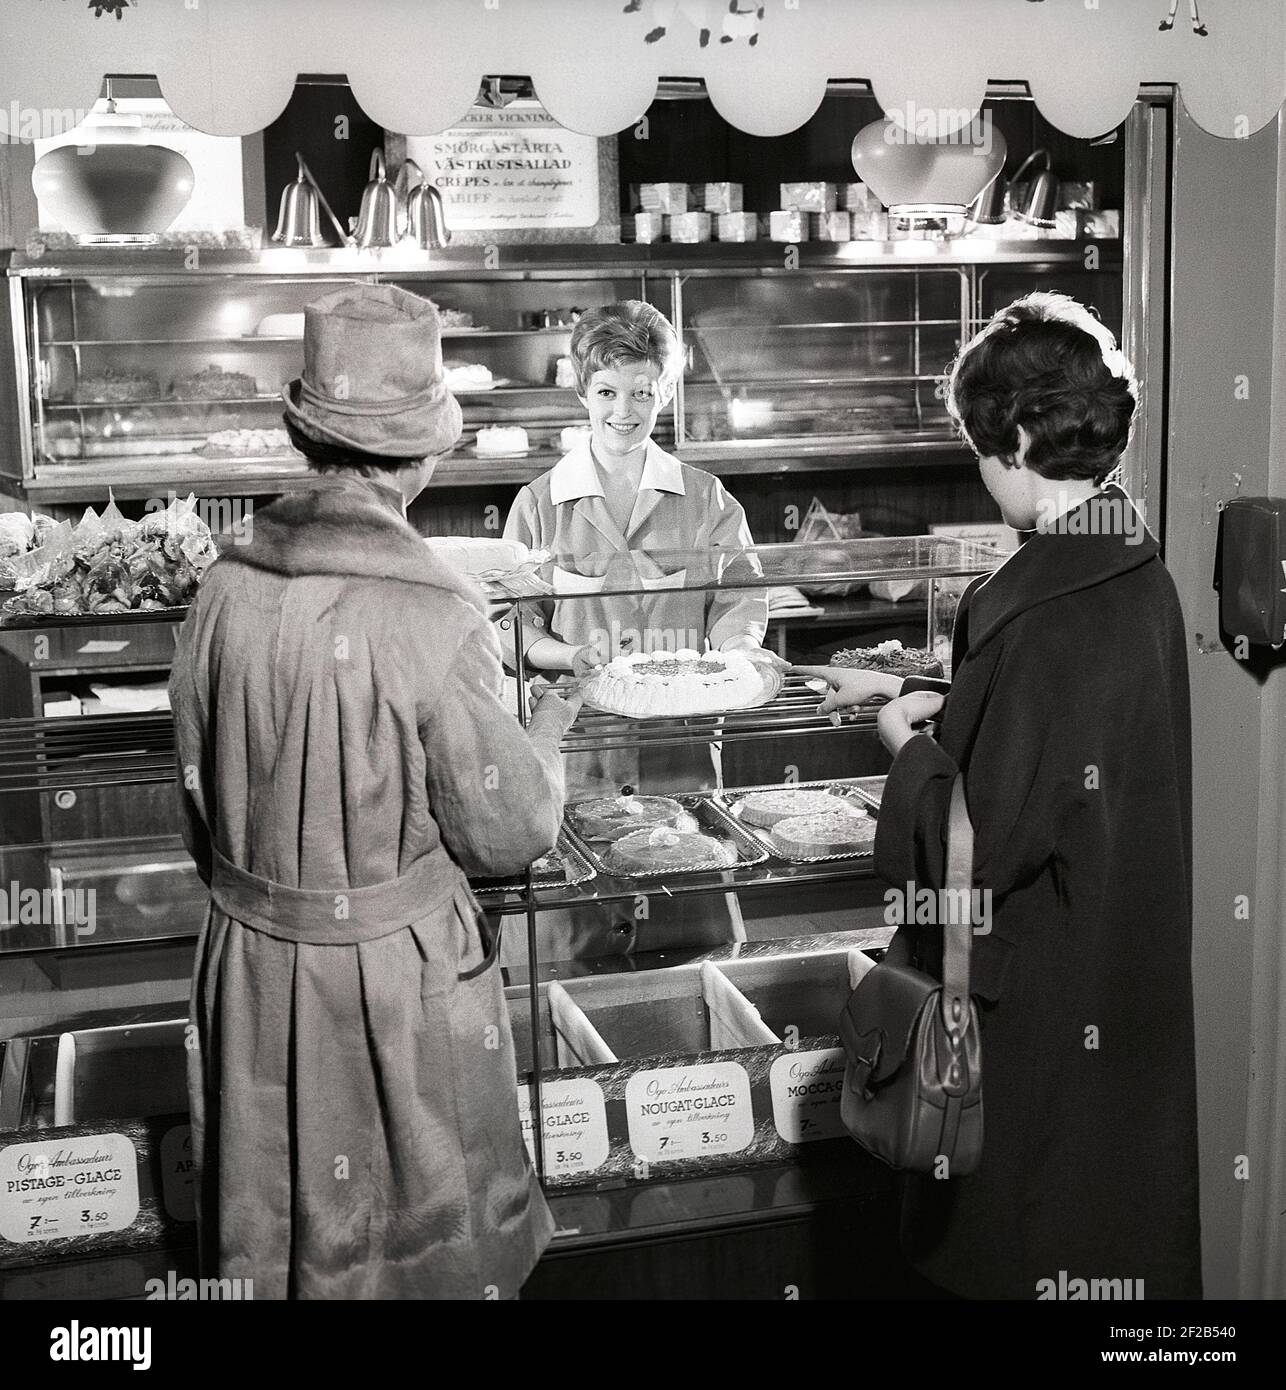 café des années 1960. Deux femmes sont debout devant le comptoir qui est plein de gâteaux et de pâtisseries fraîchement sortis du four. Suède années 60 réf. CX80-3 Banque D'Images